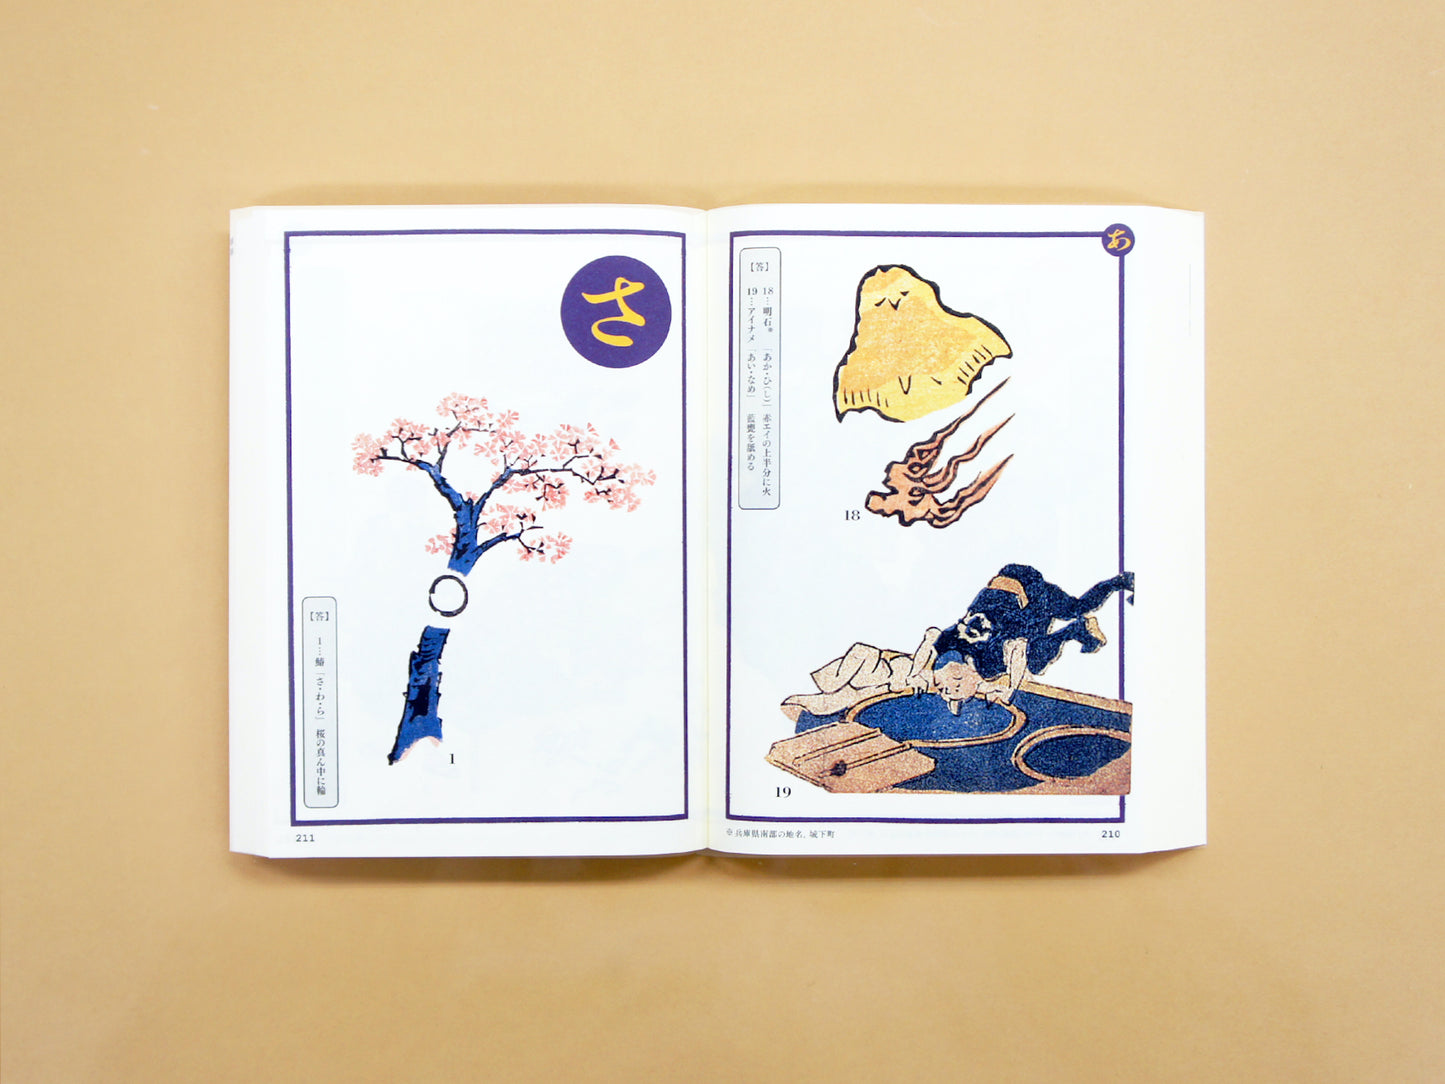 いろは判じ絵 —江戸のエスプリ・なぞなぞ絵解き Iroha Hanji-e: Pictorial Puzzles of Edo